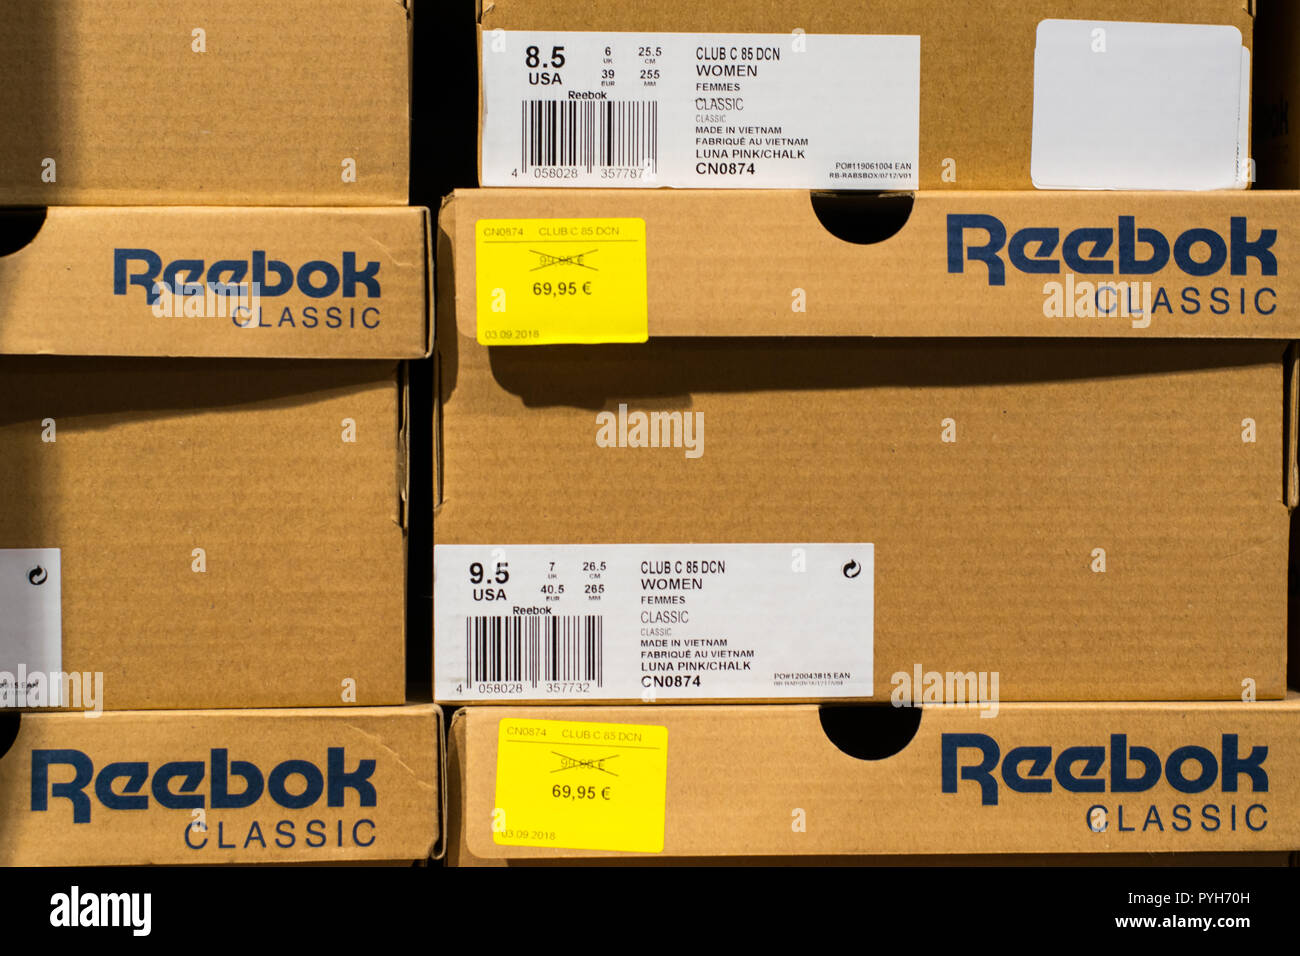 Ver en cajas Reebok zapatos con nuevos precios en Euro Fotografía de stock - Alamy